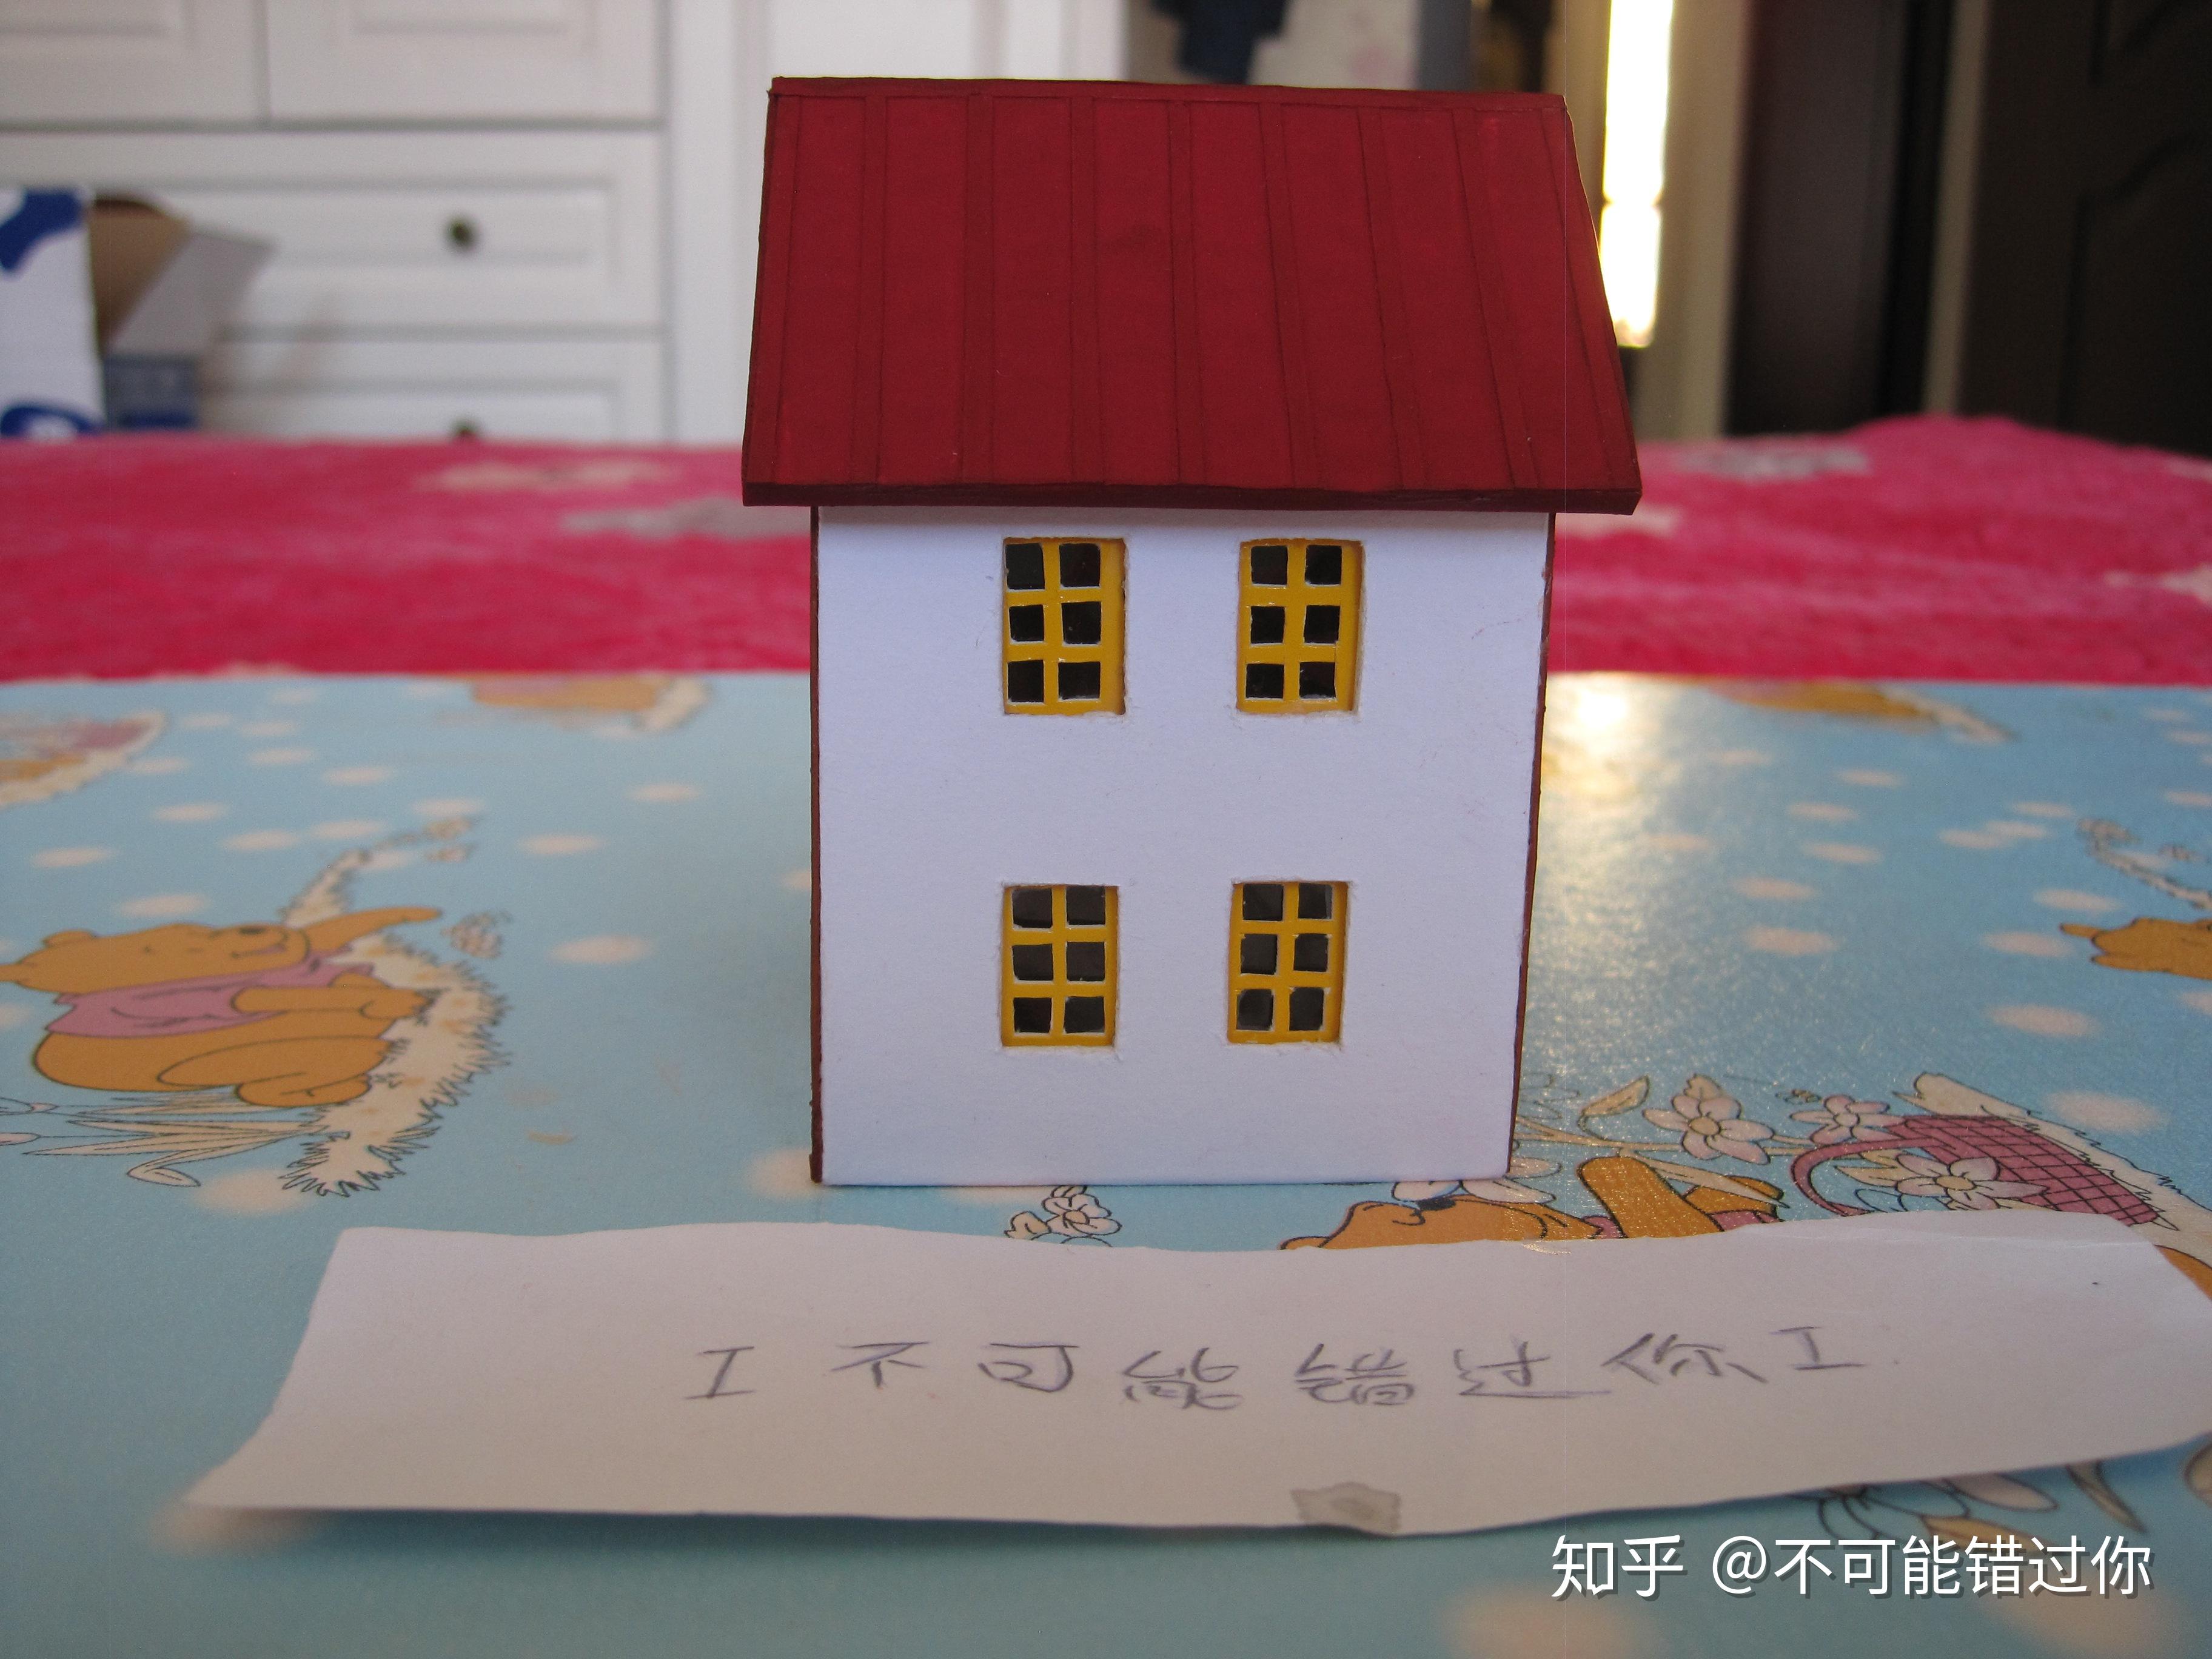 如何用废纸盒做出小房子模型，很精致那种。。？ - 知乎